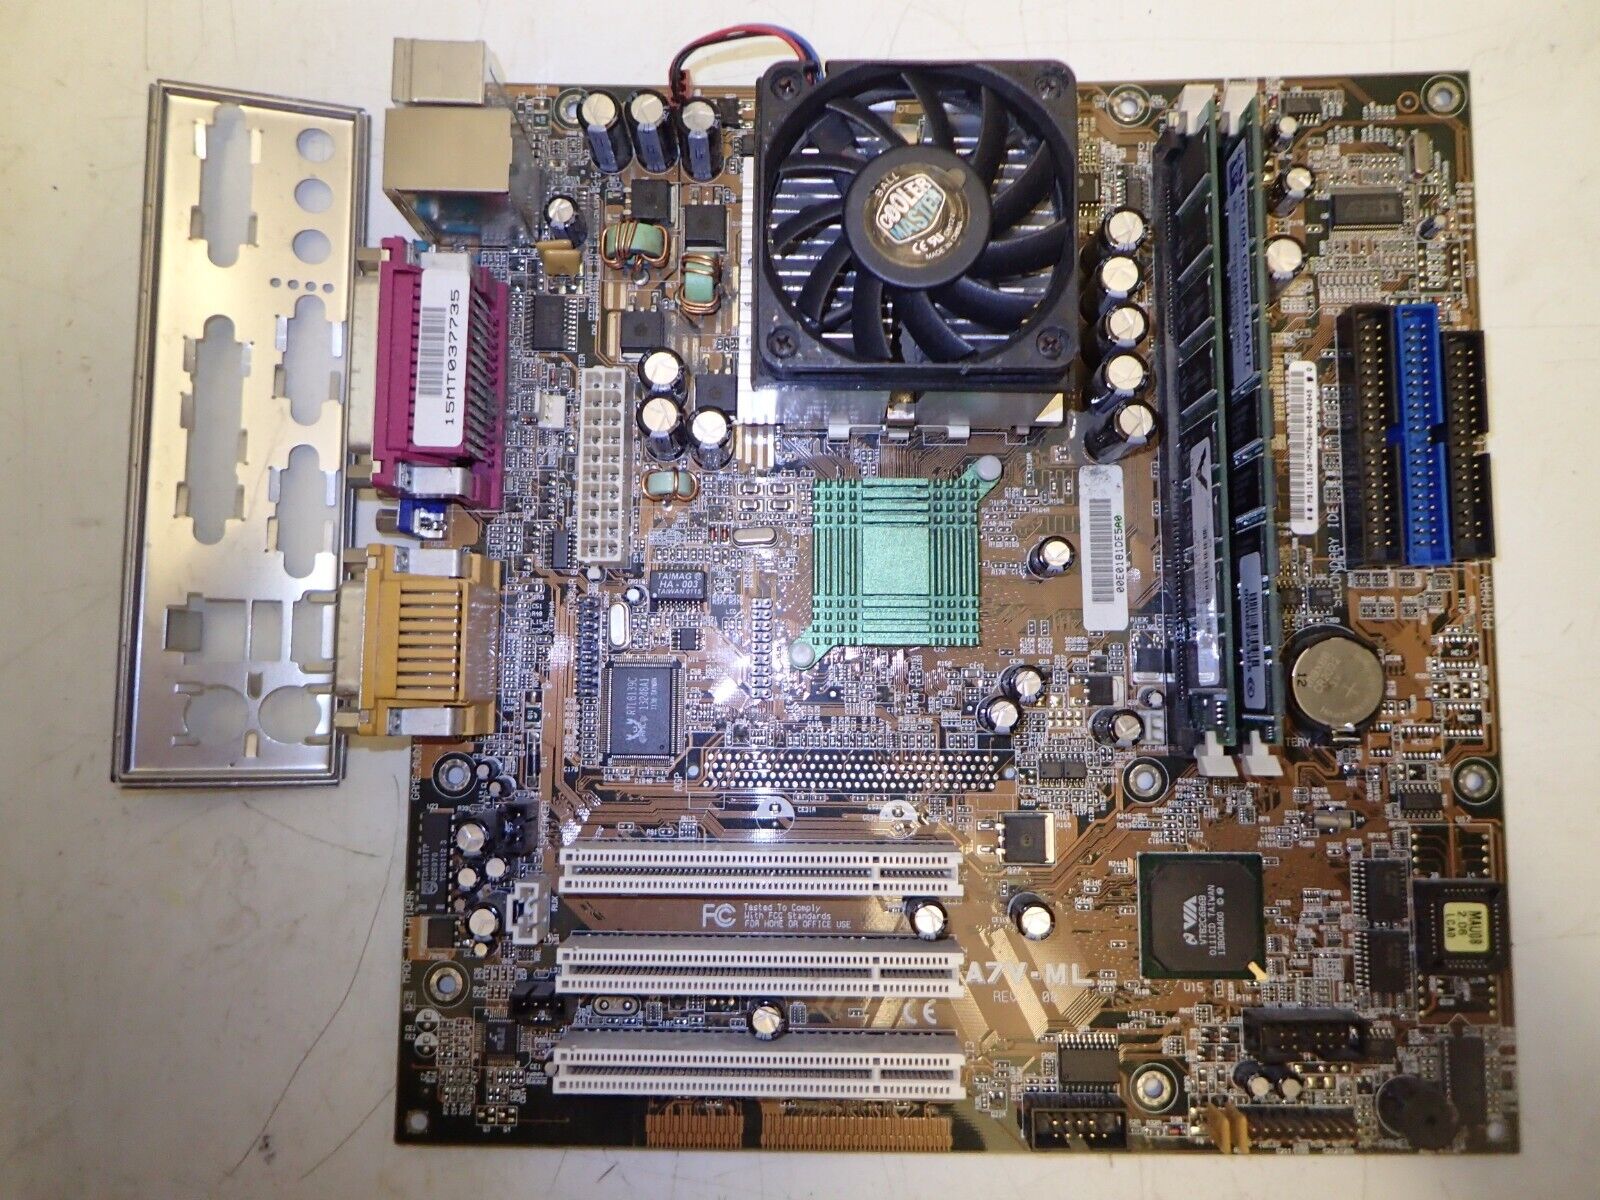 Asus A7V-VM REV 1.08 Socket 462 AMD Motherboard+ CPU / Memory